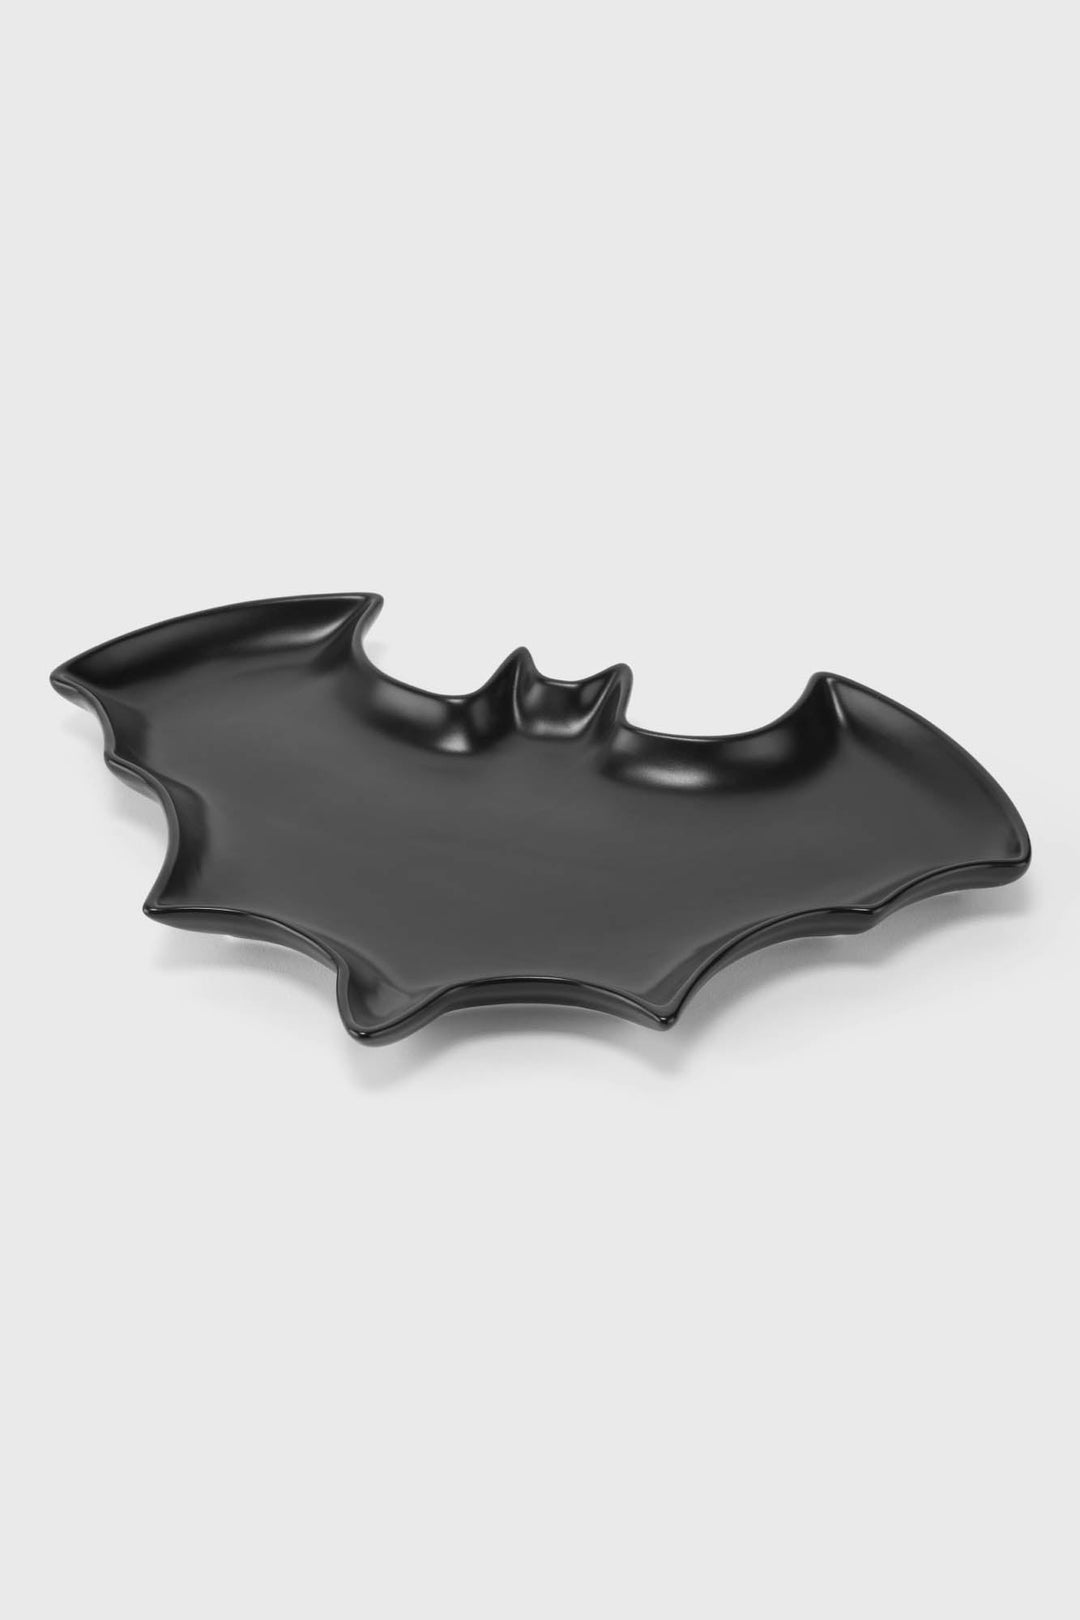 black bat dinner plate